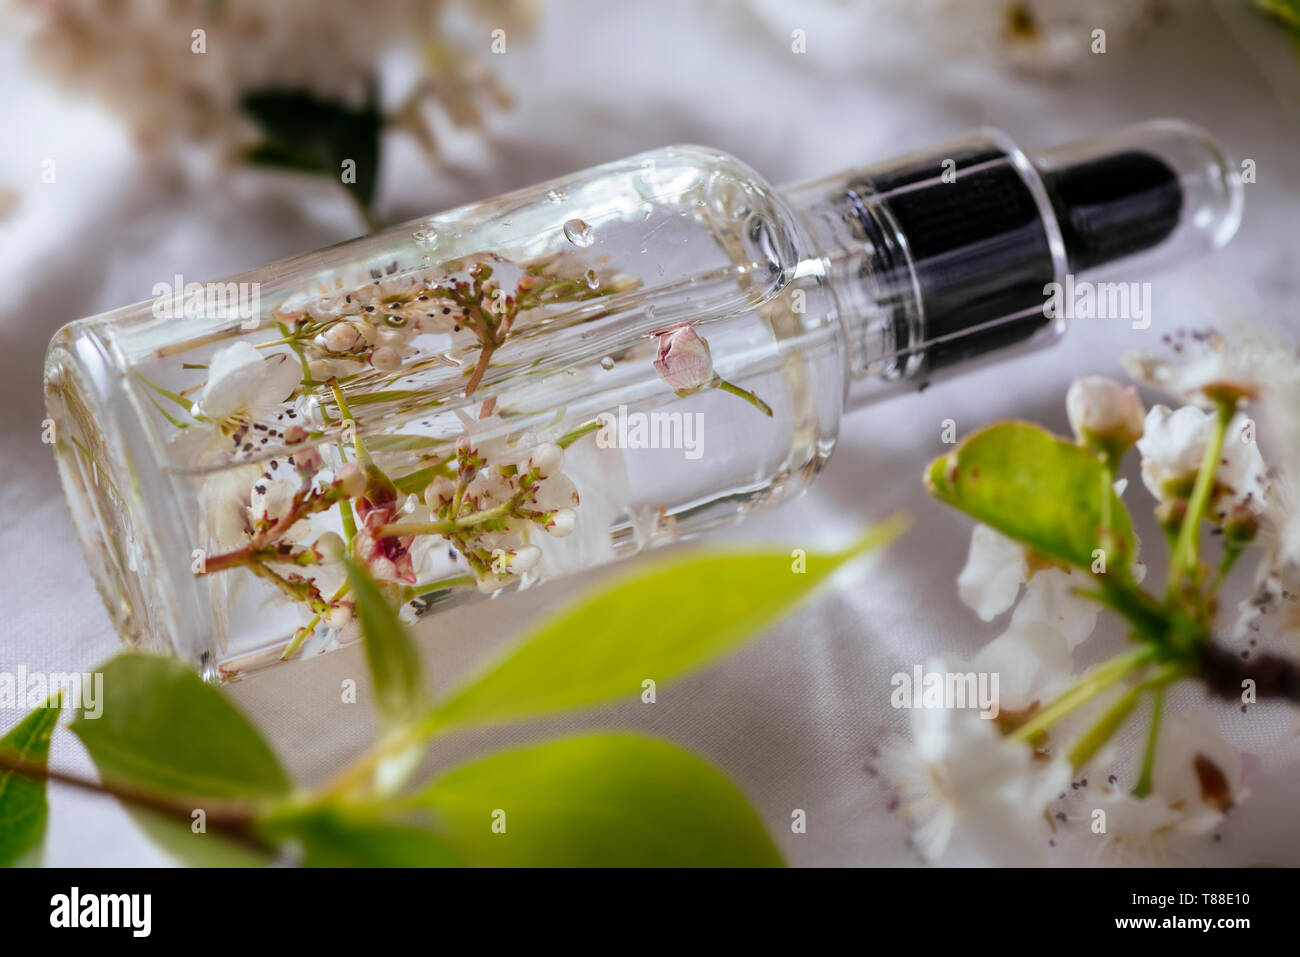 Ätherisches Öl, mit frischen weißen Blumen der Kirsche, auf grüne Blätter Hintergrund Stockfoto